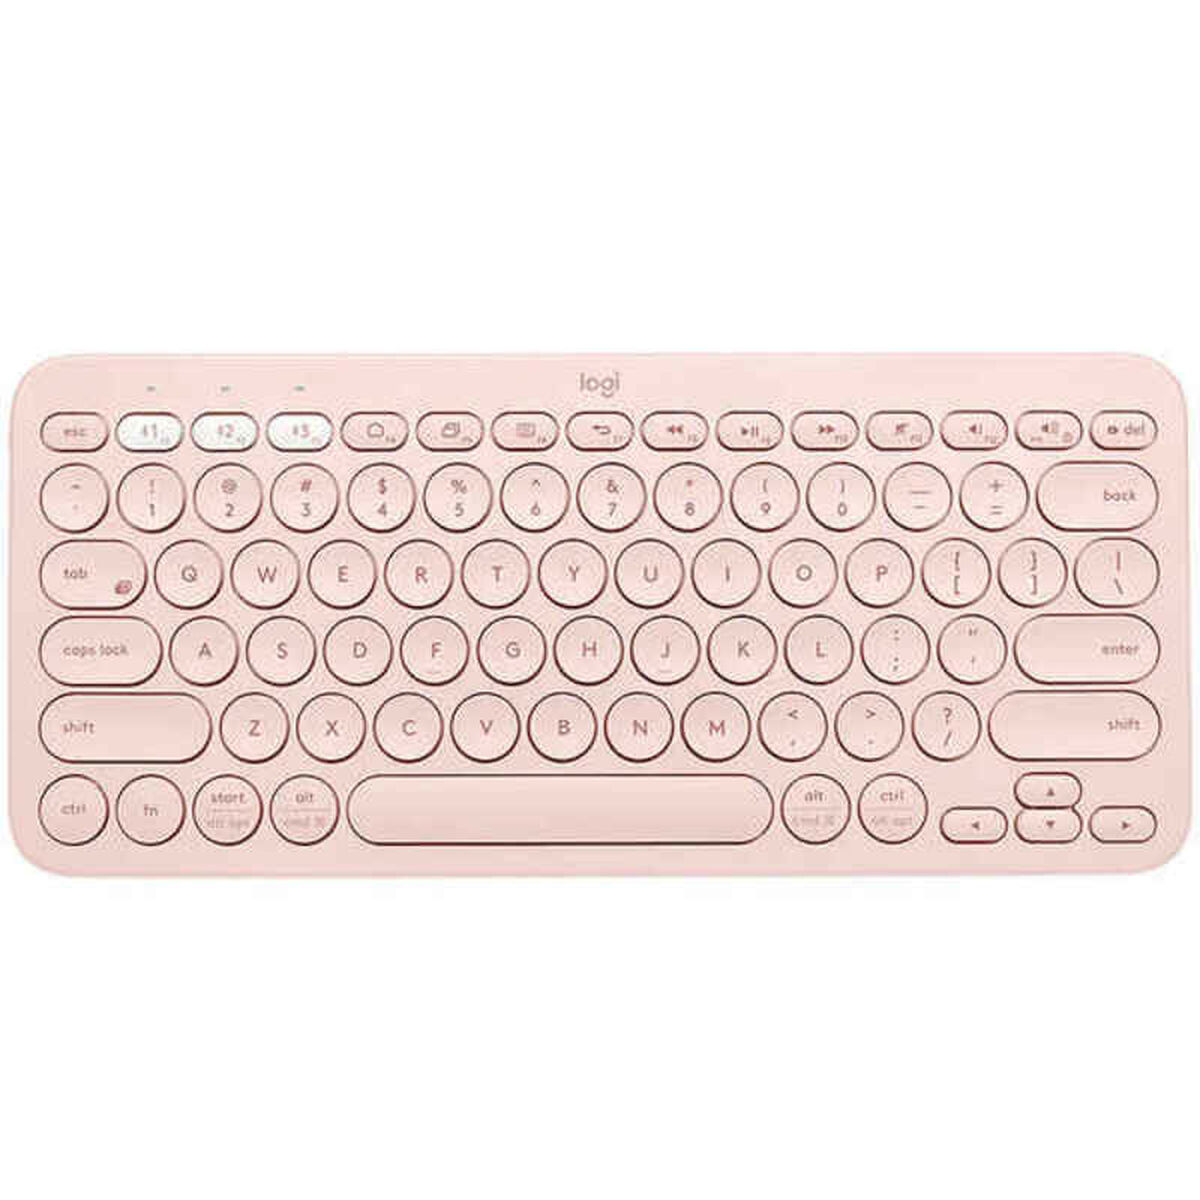 Wireless Keyboard Logitech K380  Pink Spanish Qwerty